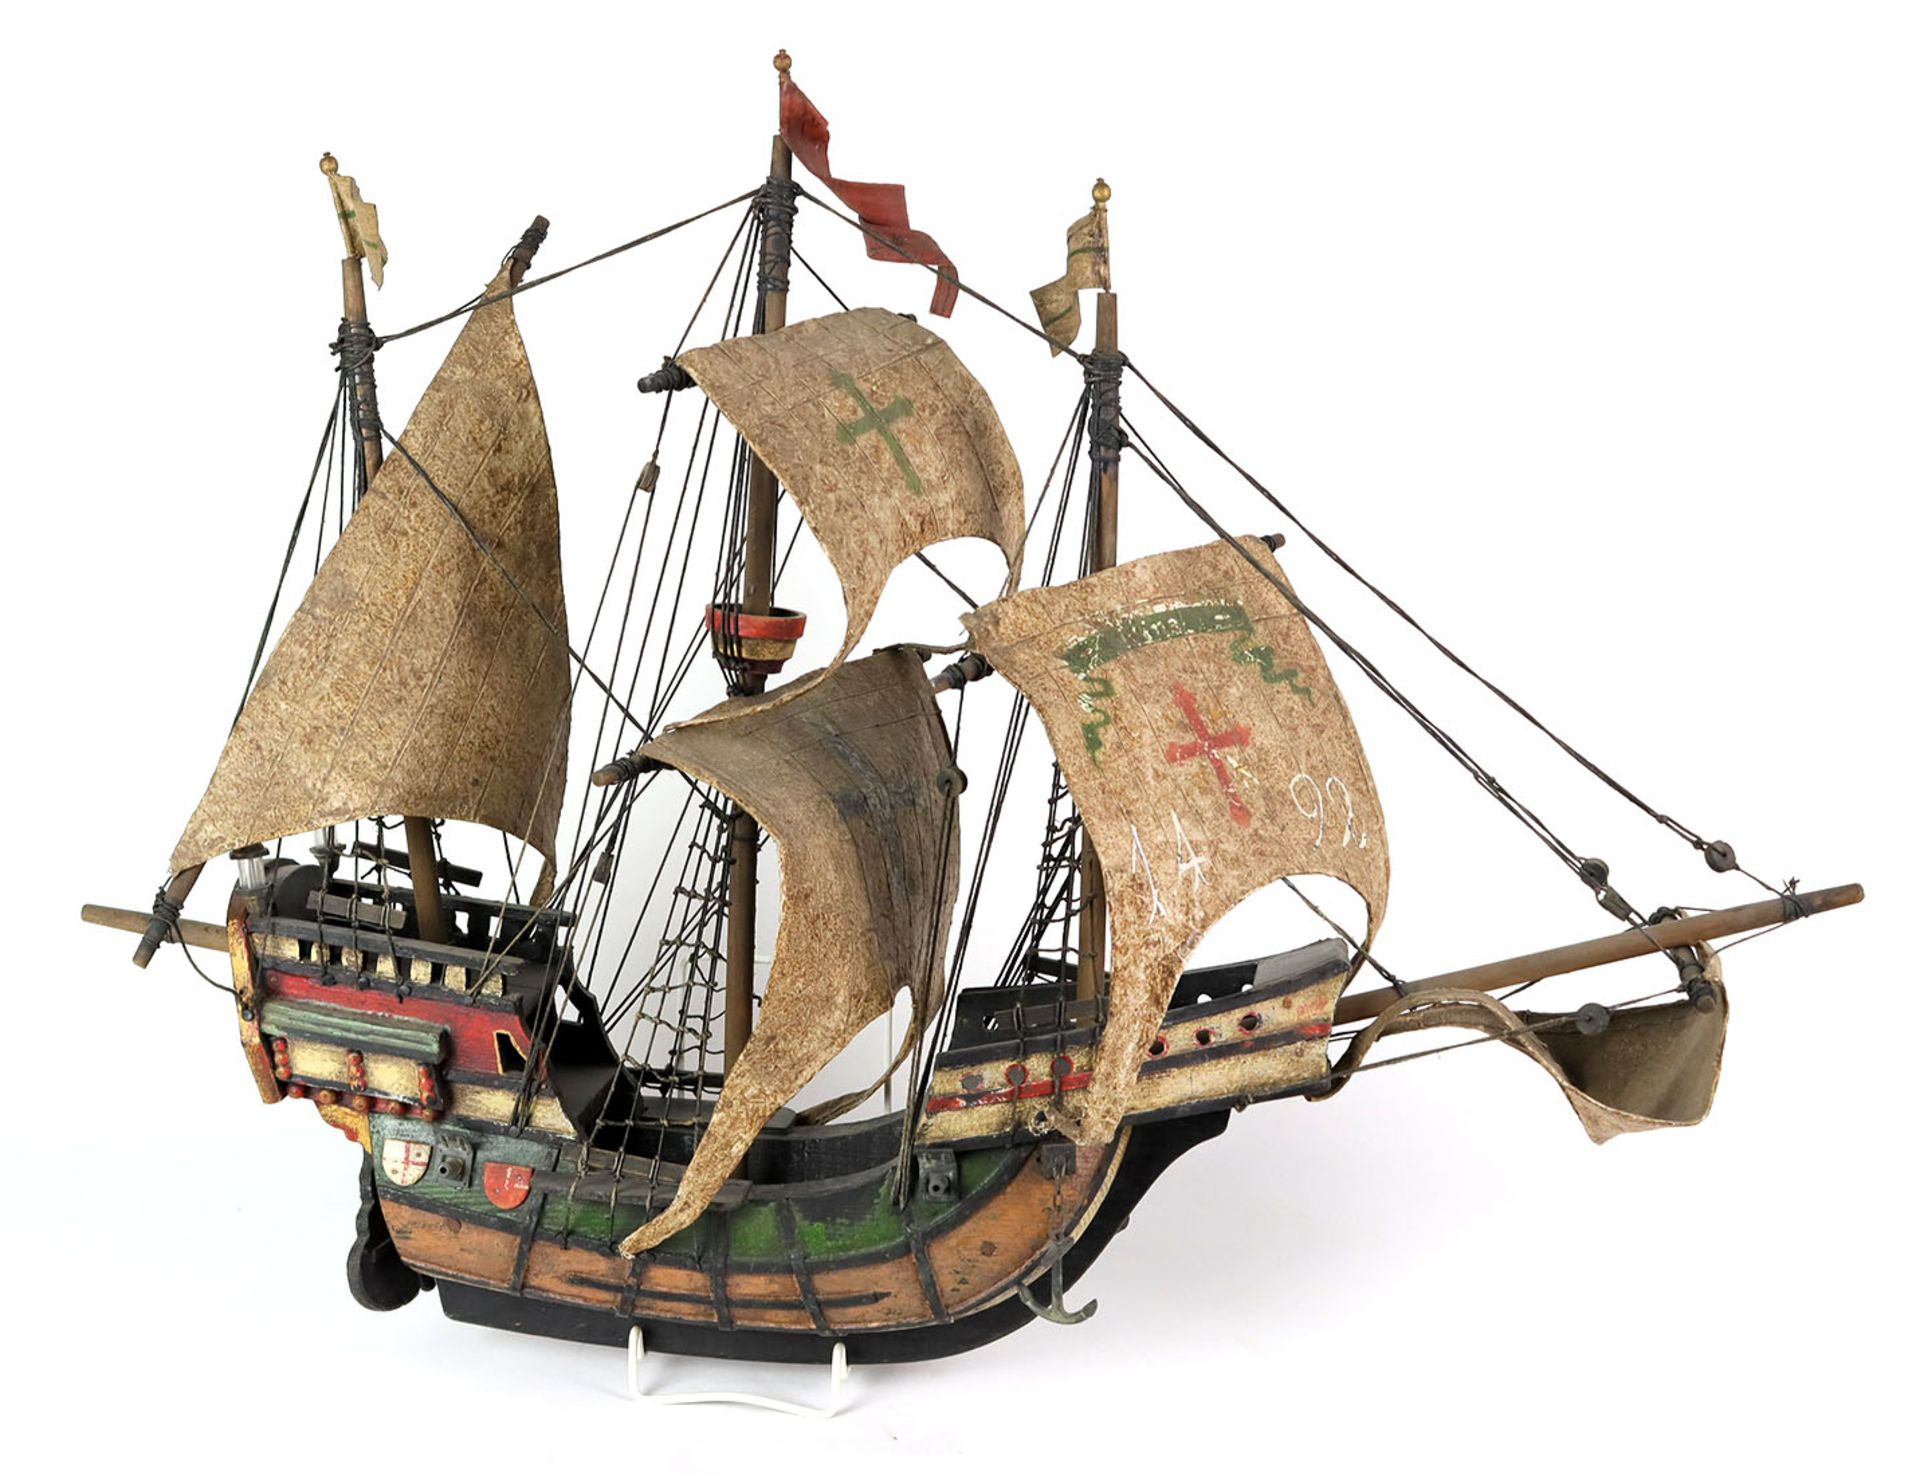 Schiffsmodell *Santa Maria*Holz, farbig lackiert, als historischer Dreimaster unter voller